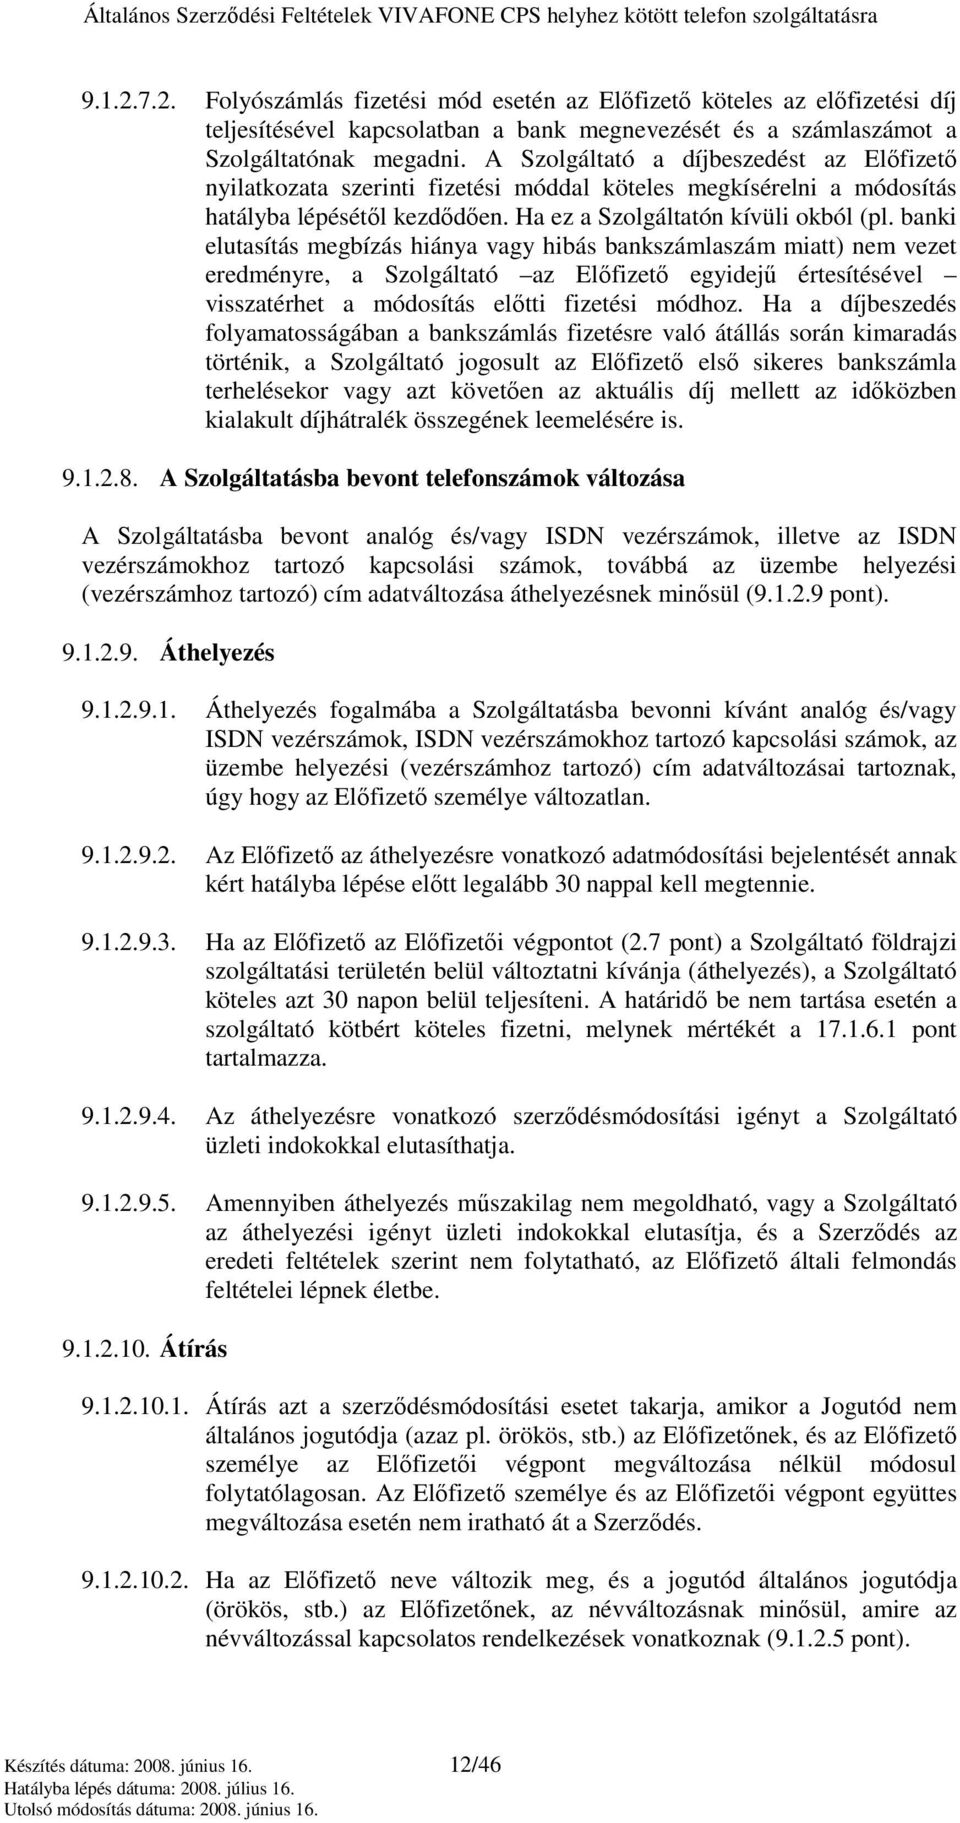 banki elutasítás megbízás hiánya vagy hibás bankszámlaszám miatt) nem vezet eredményre, a Szolgáltató az Elıfizetı egyidejő értesítésével visszatérhet a módosítás elıtti fizetési módhoz.